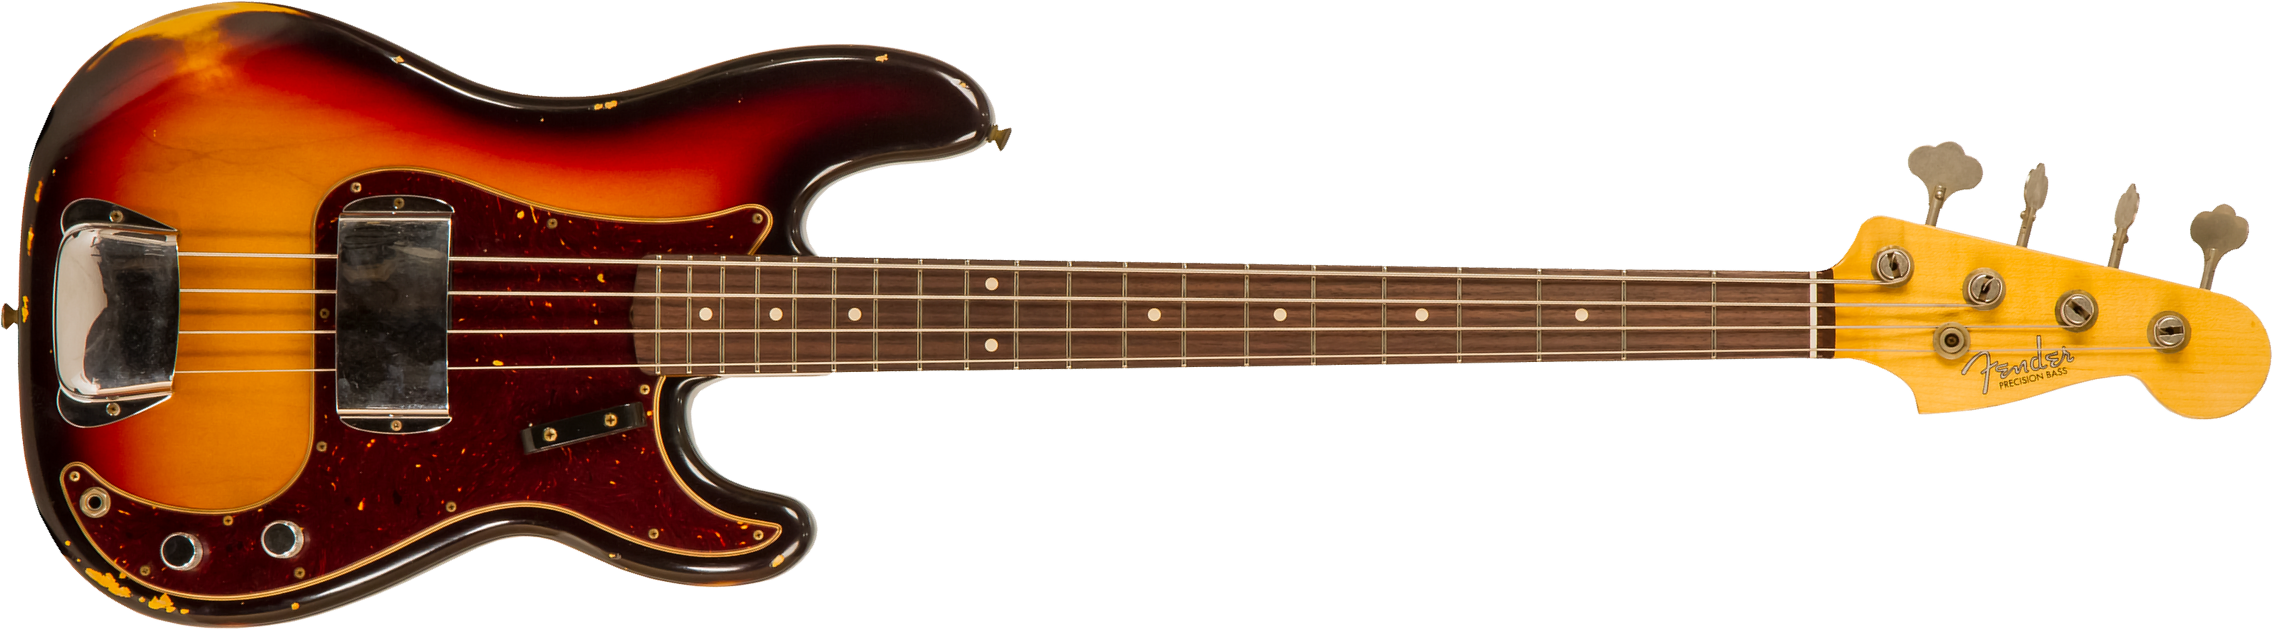 Fender Custom Shop Precision Bass 1961 Rw #cz556533 - Relic 3-color Sunburst - Basse Électrique Solid Body - Main picture